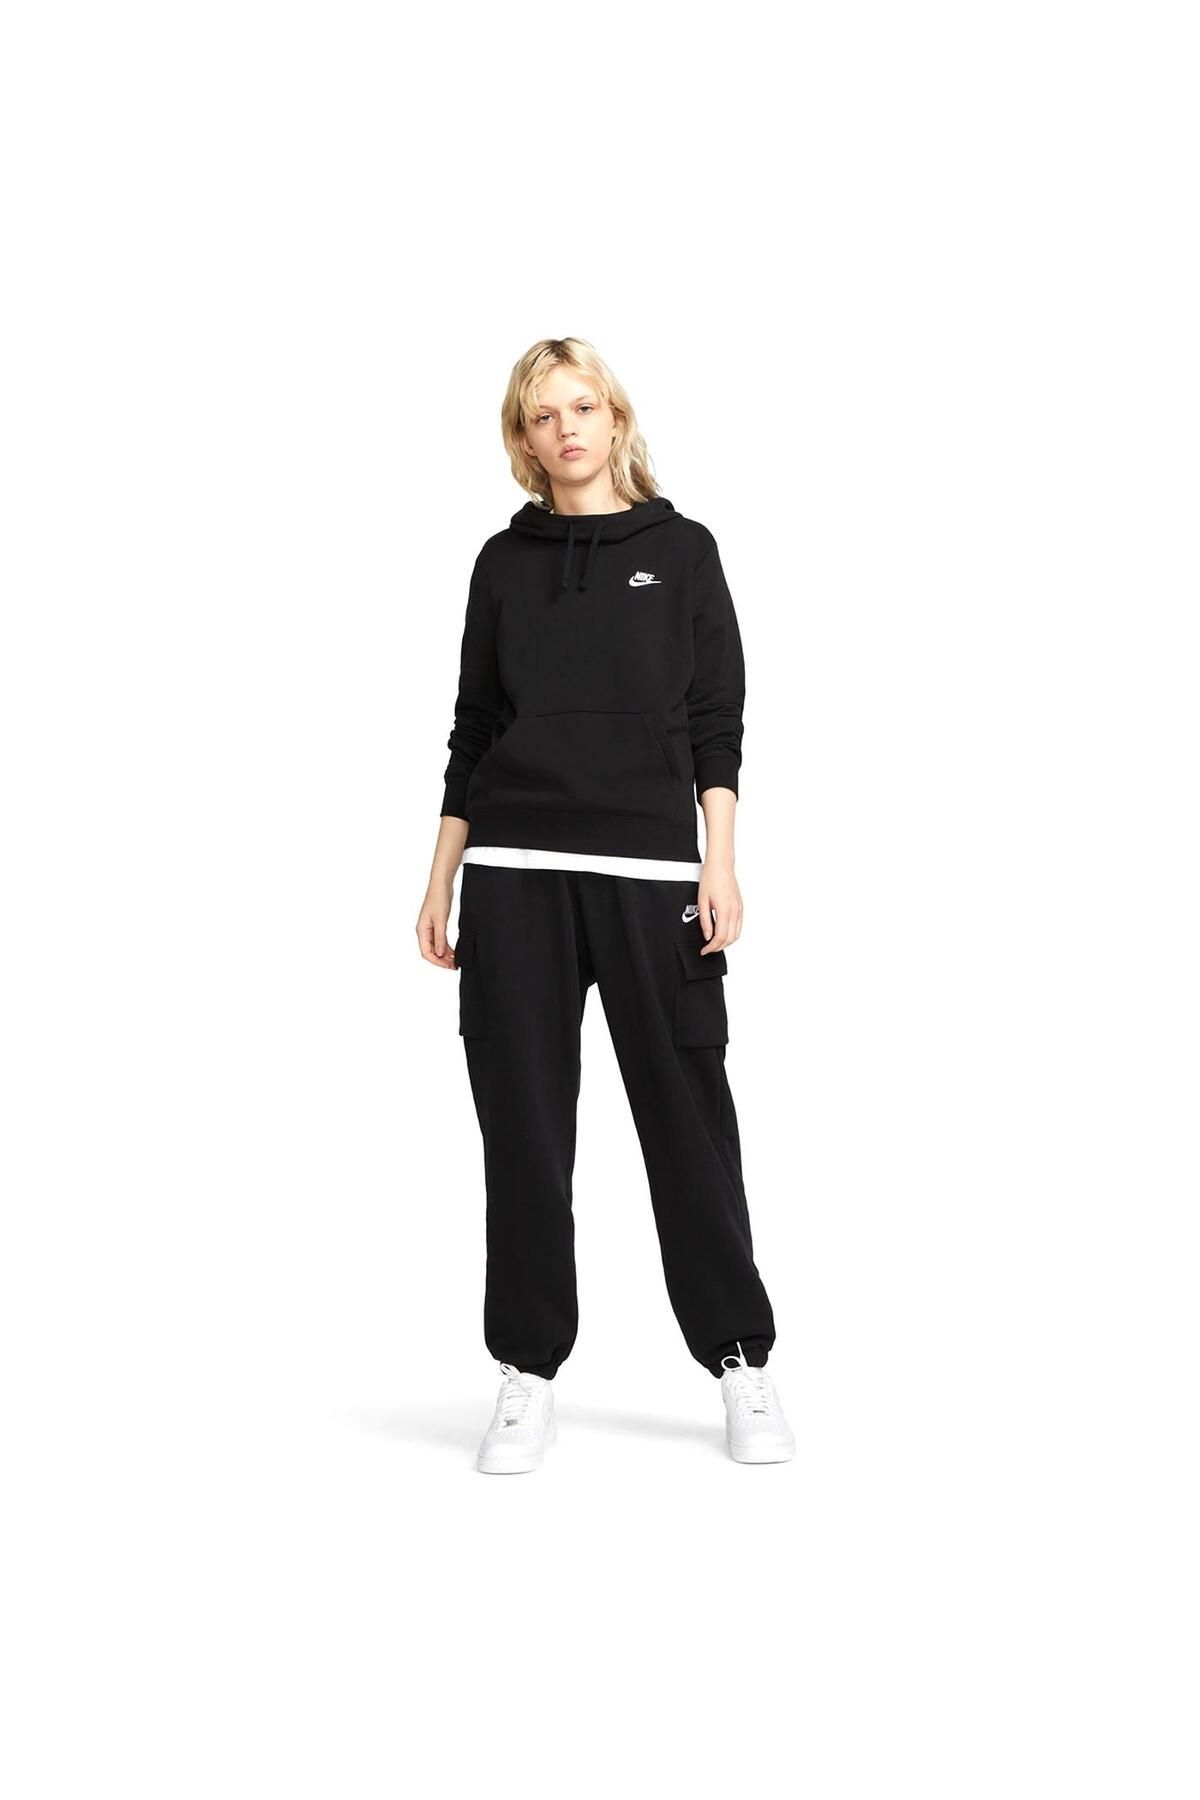 Nike Sportswear Club Fleece Women's Casual Style Sweatpants DQ5191-894 -  Trendyol